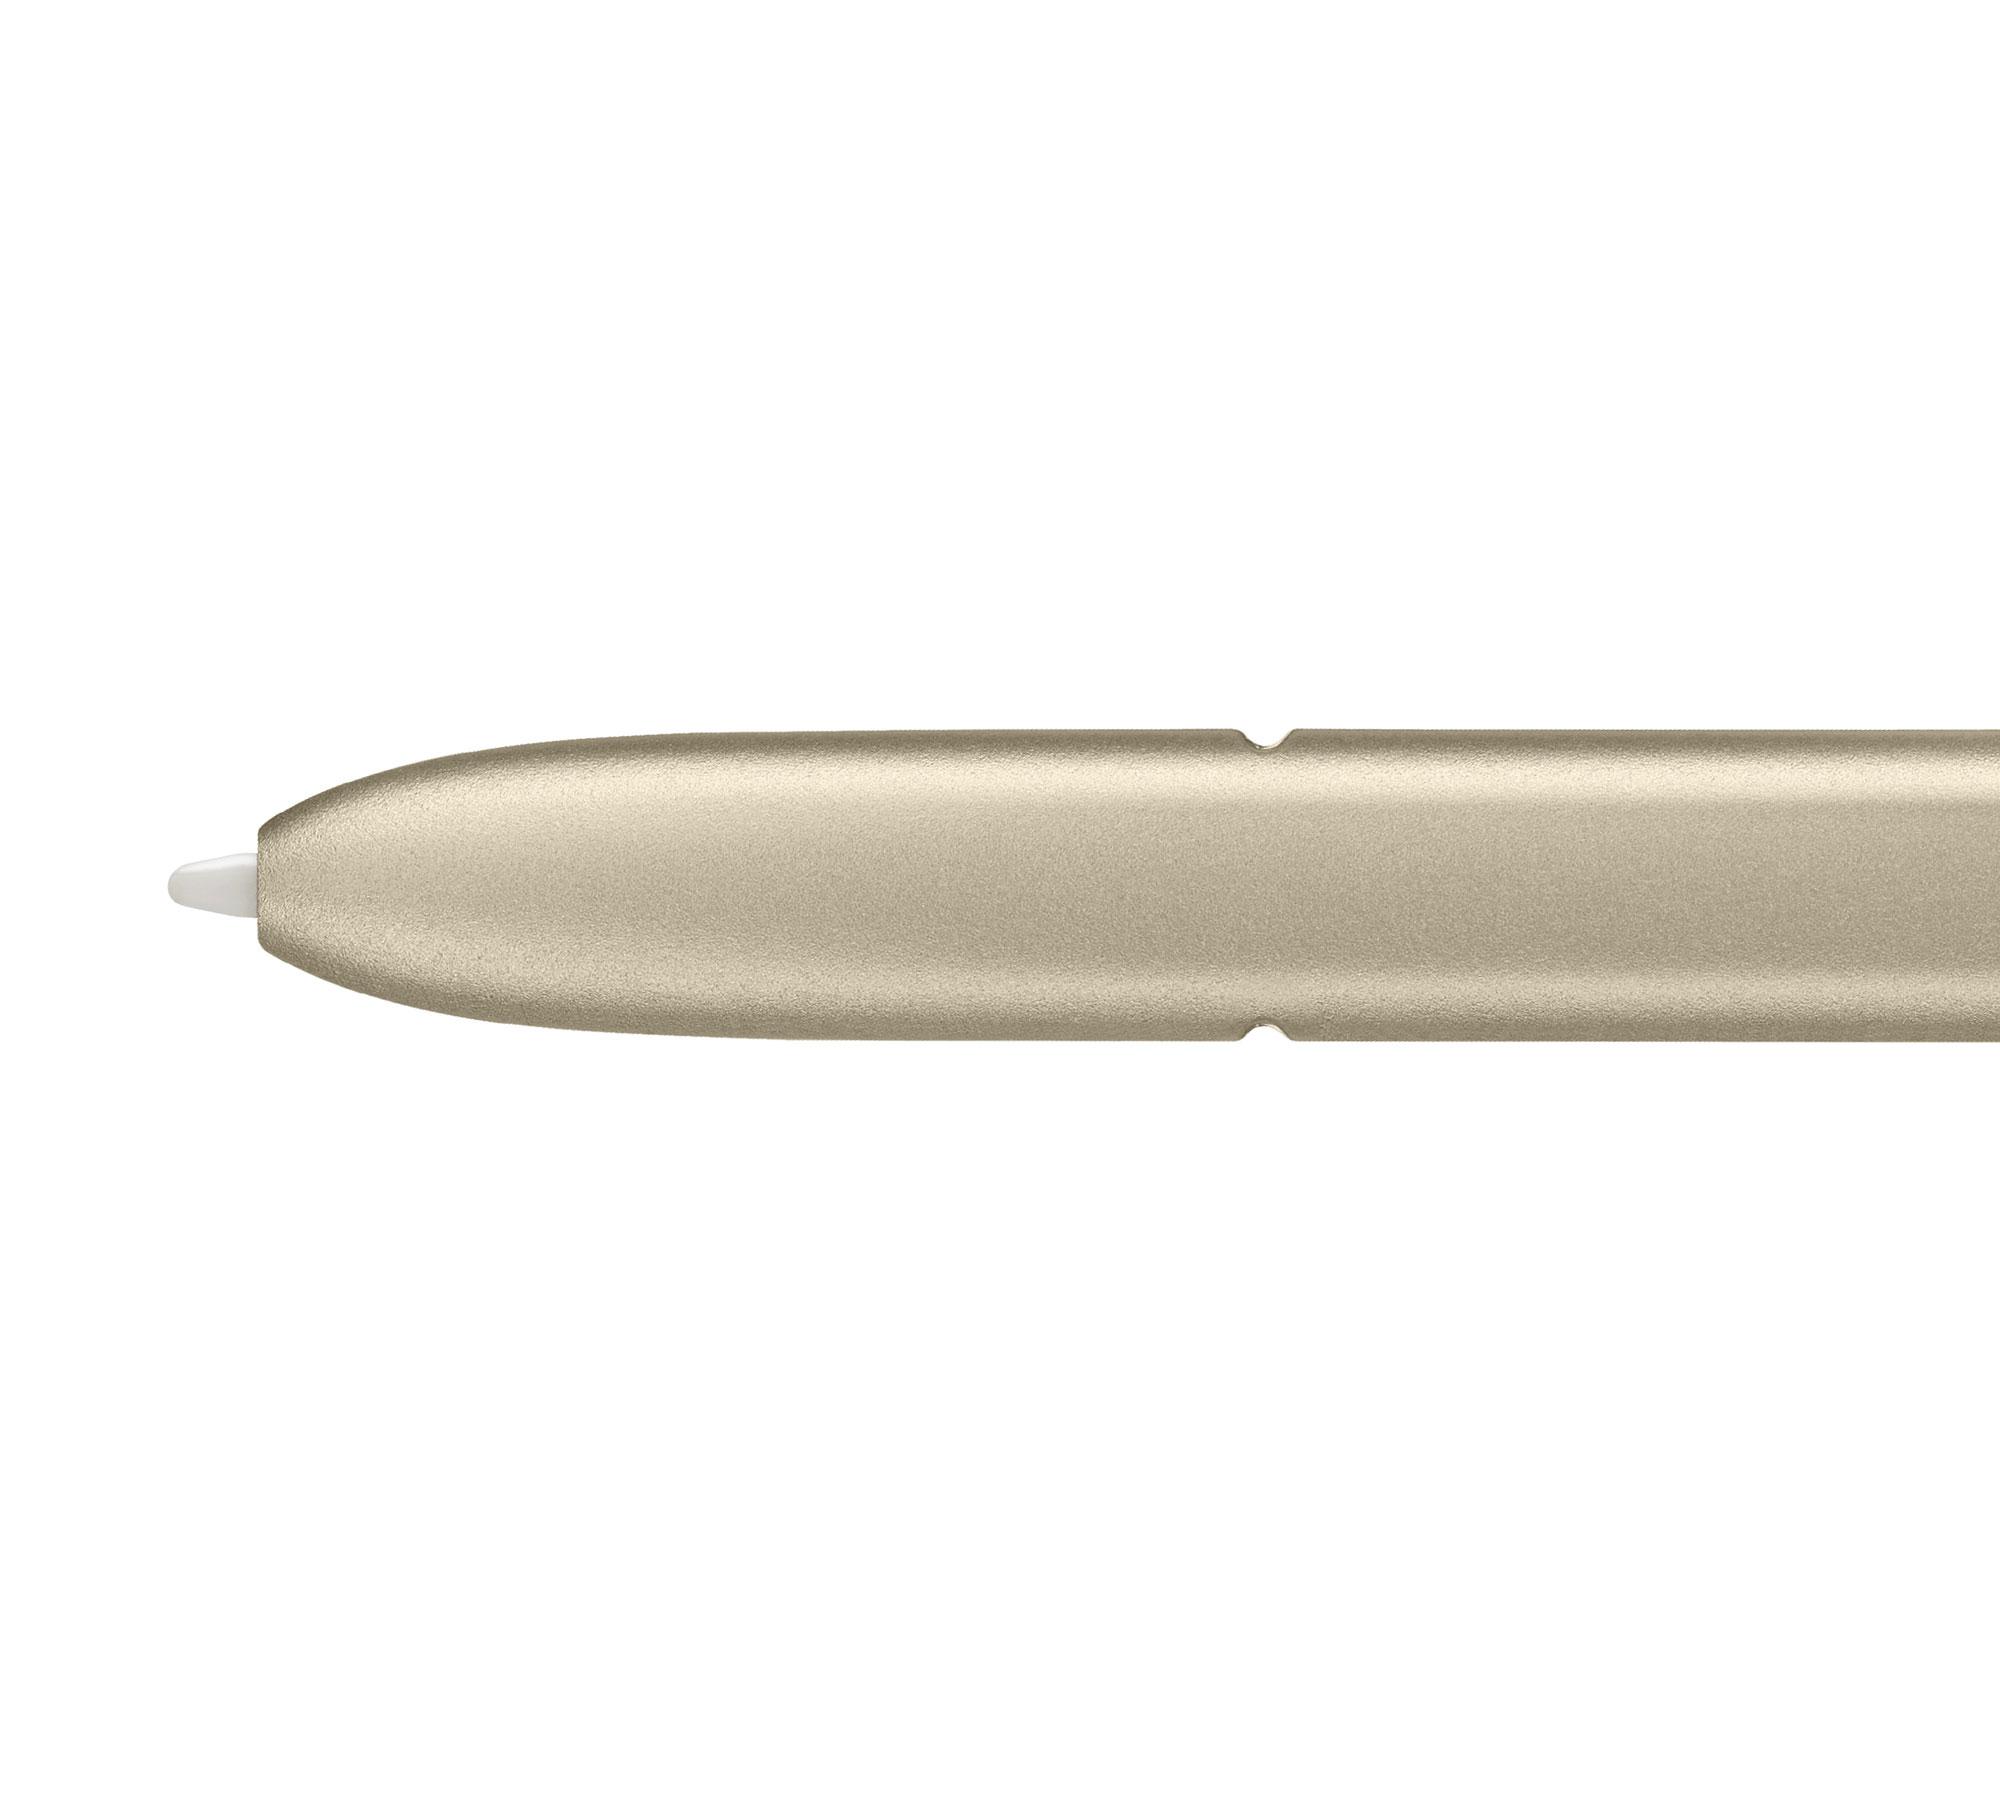 Samsung Galaxy Note 7 detalle puntero del S Pen